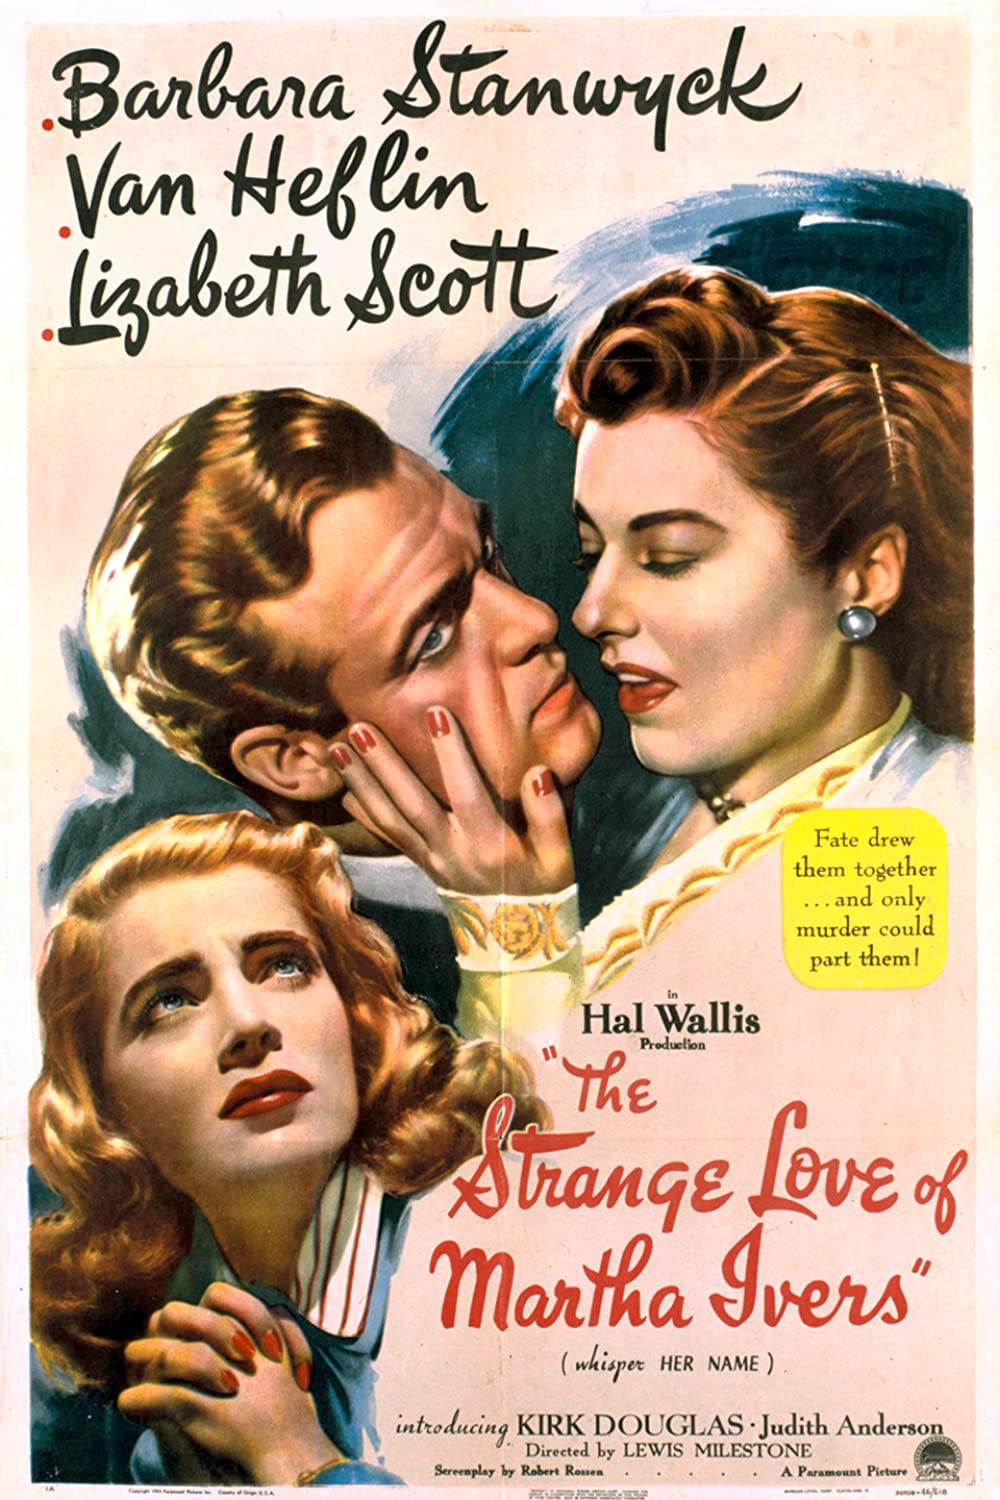 ดูหนังออนไลน์ฟรี The Strange Love of Martha Ivers (1946) เดอะสเตรงเจอร์เลิฟ ออฟ มารธาร์ ไอเวิร์บส